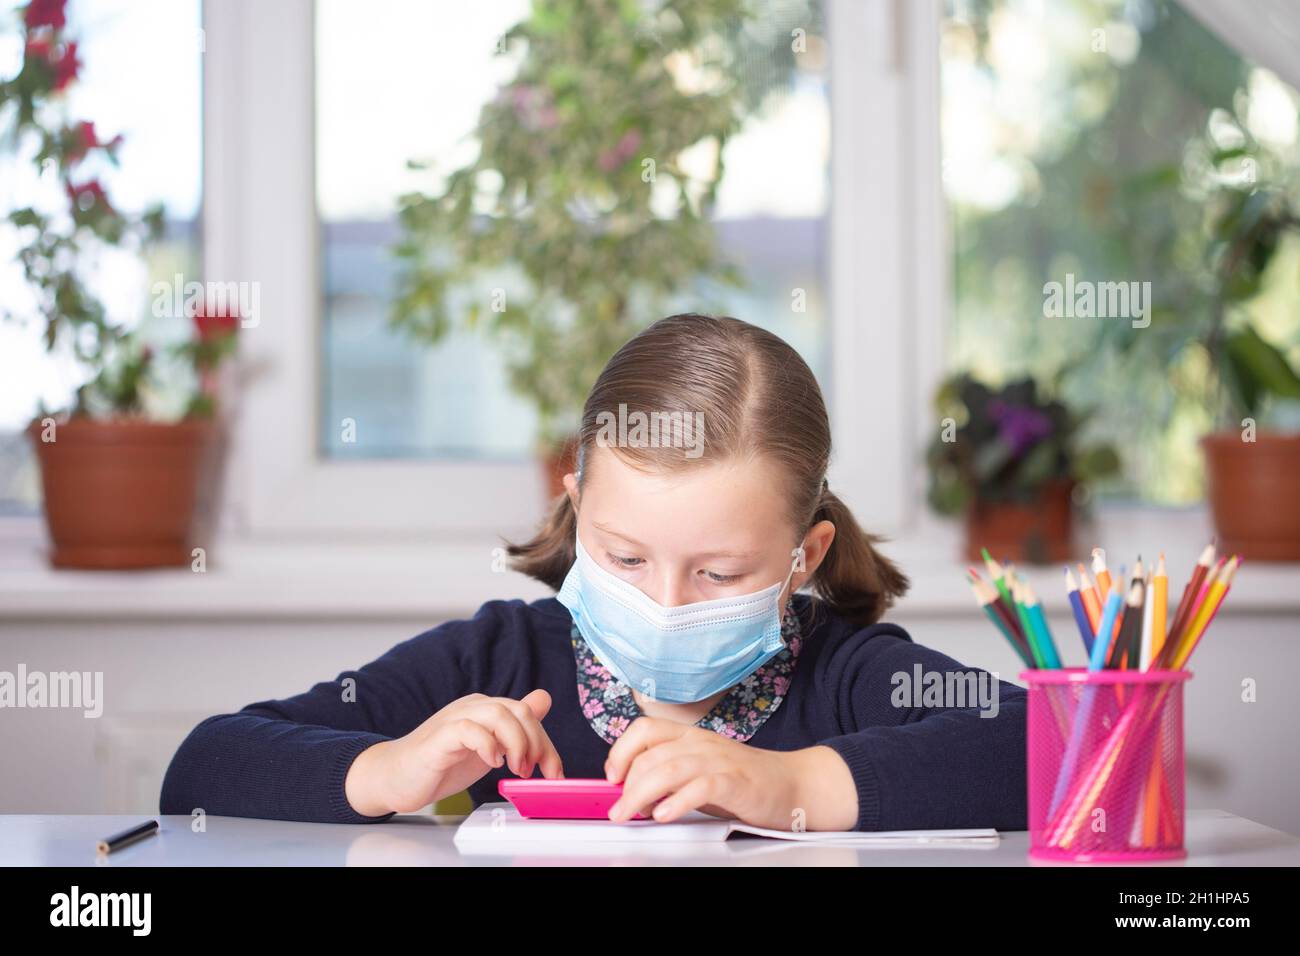 Enfant d'école portant un masque de protection contre le coronavirus à l'école. Mesures visant à prévenir la propagation du COVID-19 dans les écoles pendant le coronavirus pande Banque D'Images